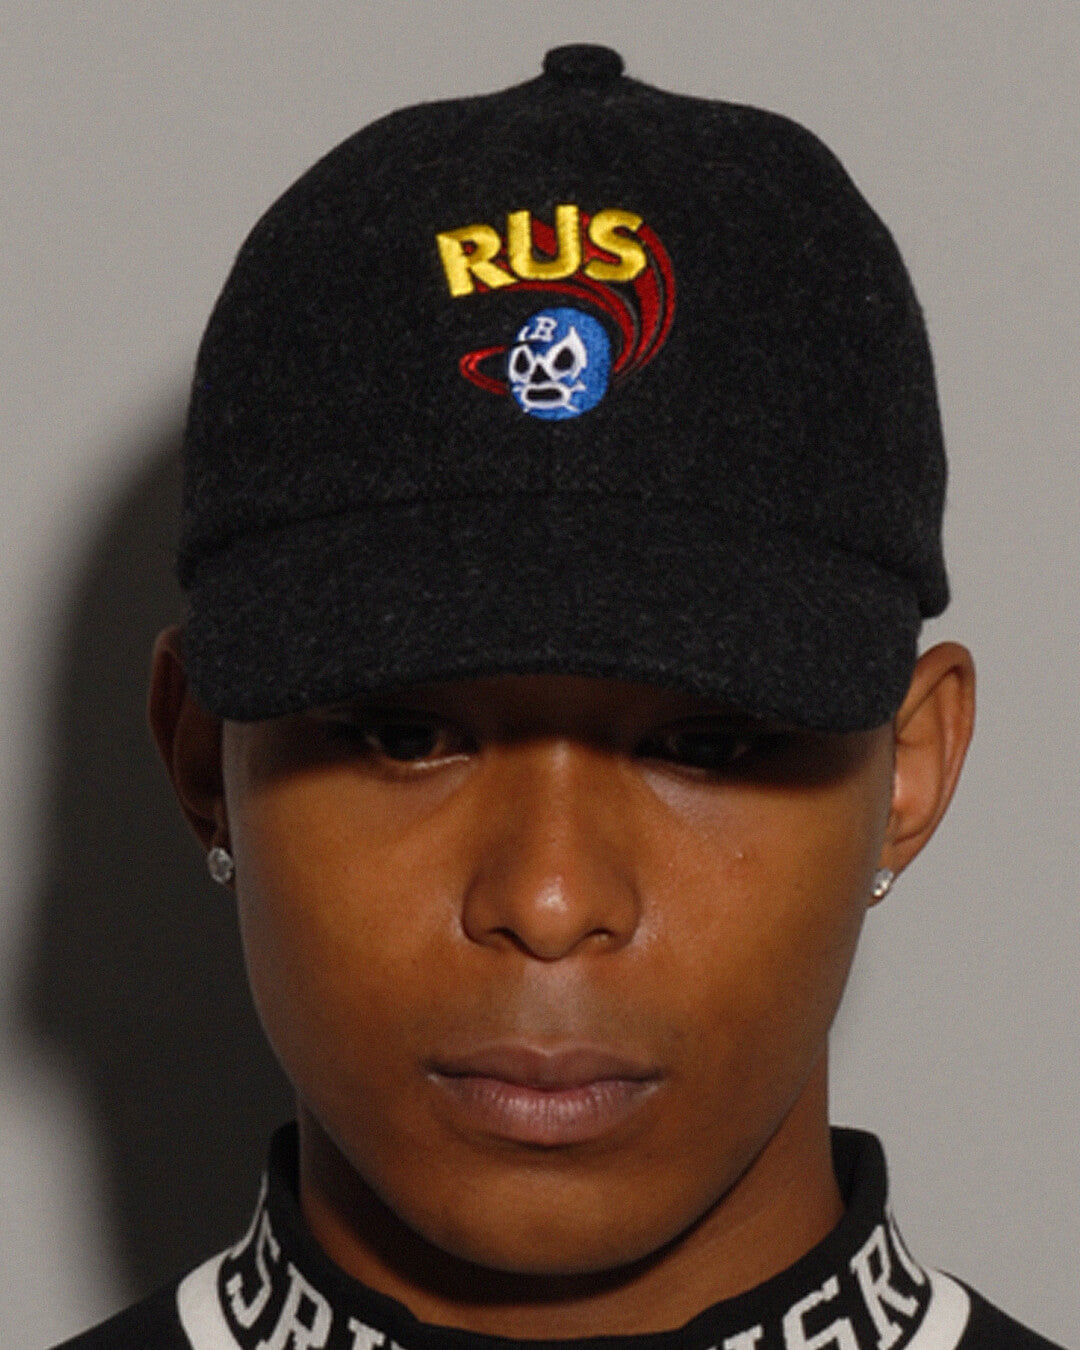 RUS FELT CAP